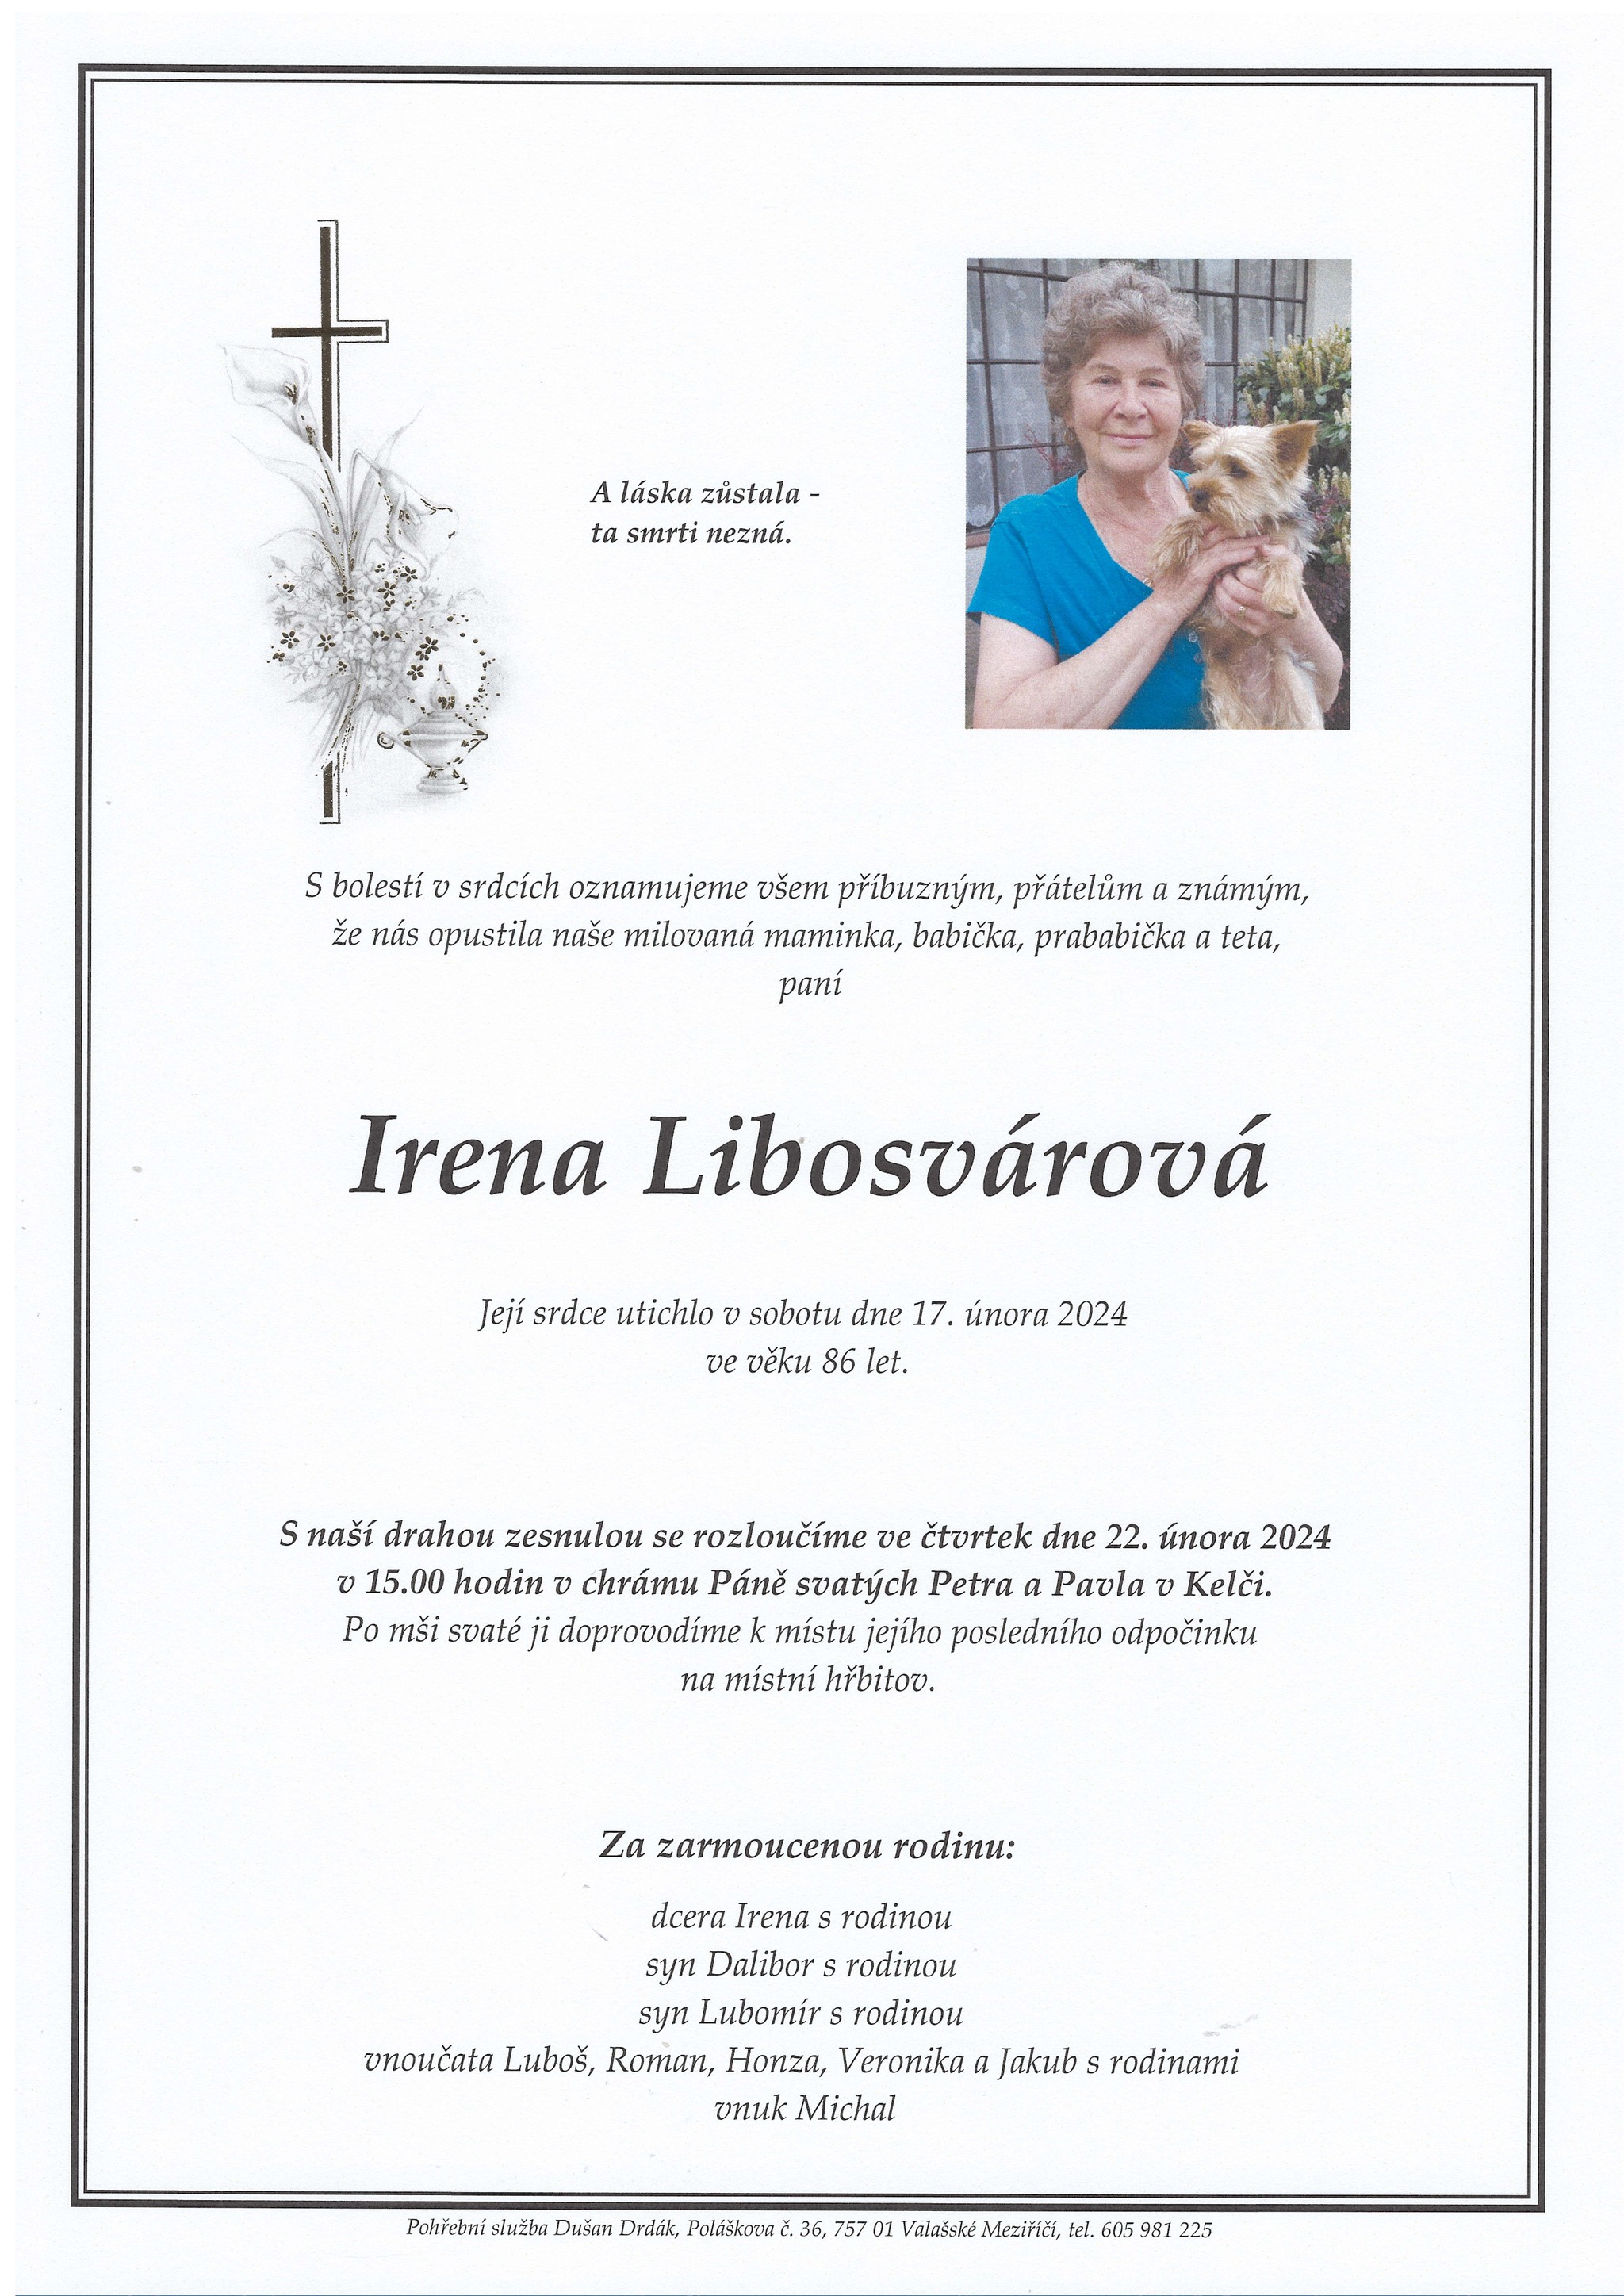 Irena Libosvárová